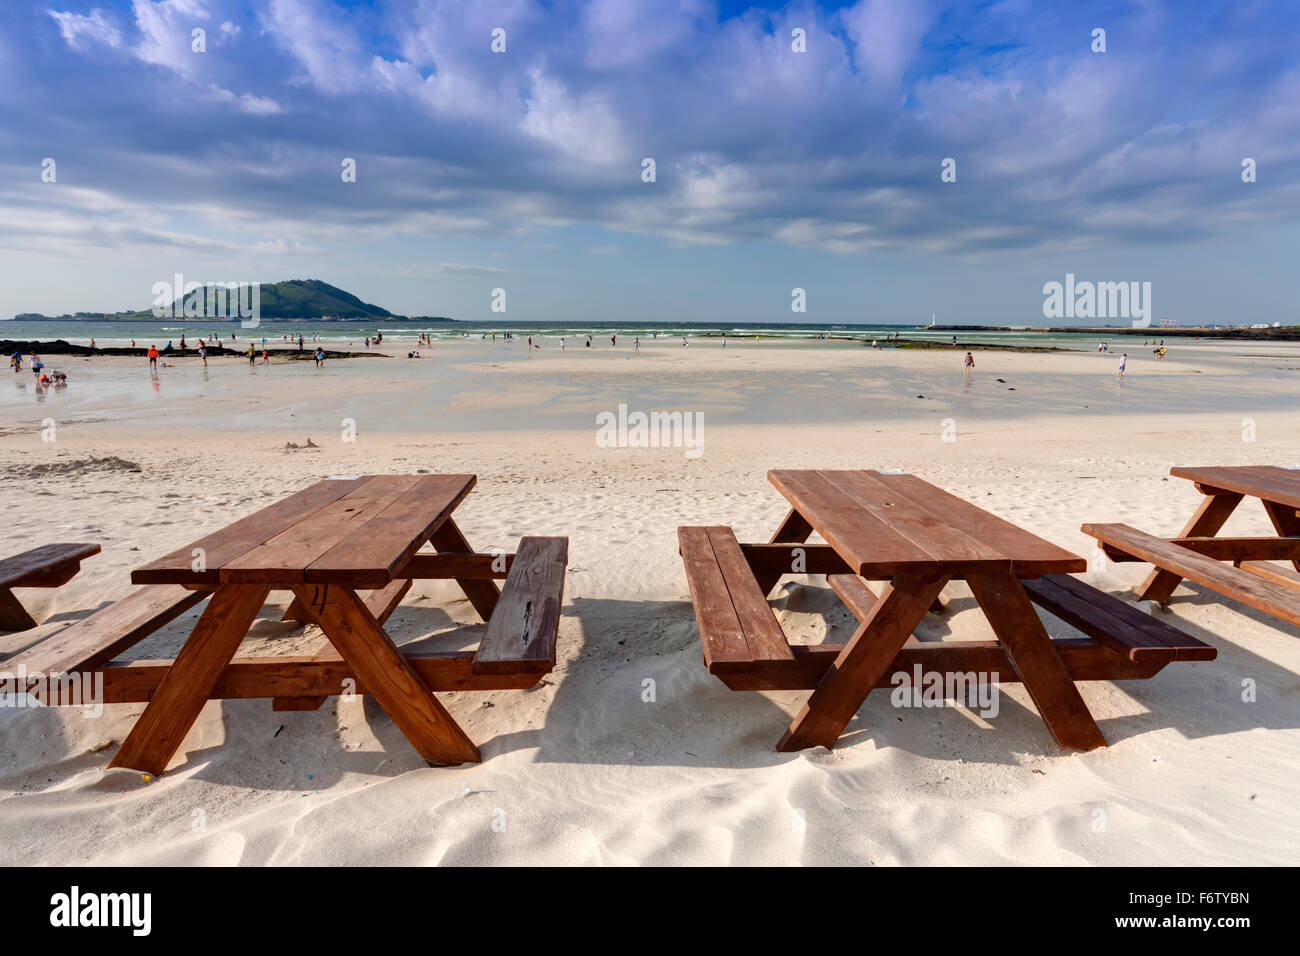 Table en bois vide sur la plage, l'île de Jeju, Corée du Sud Banque D'Images